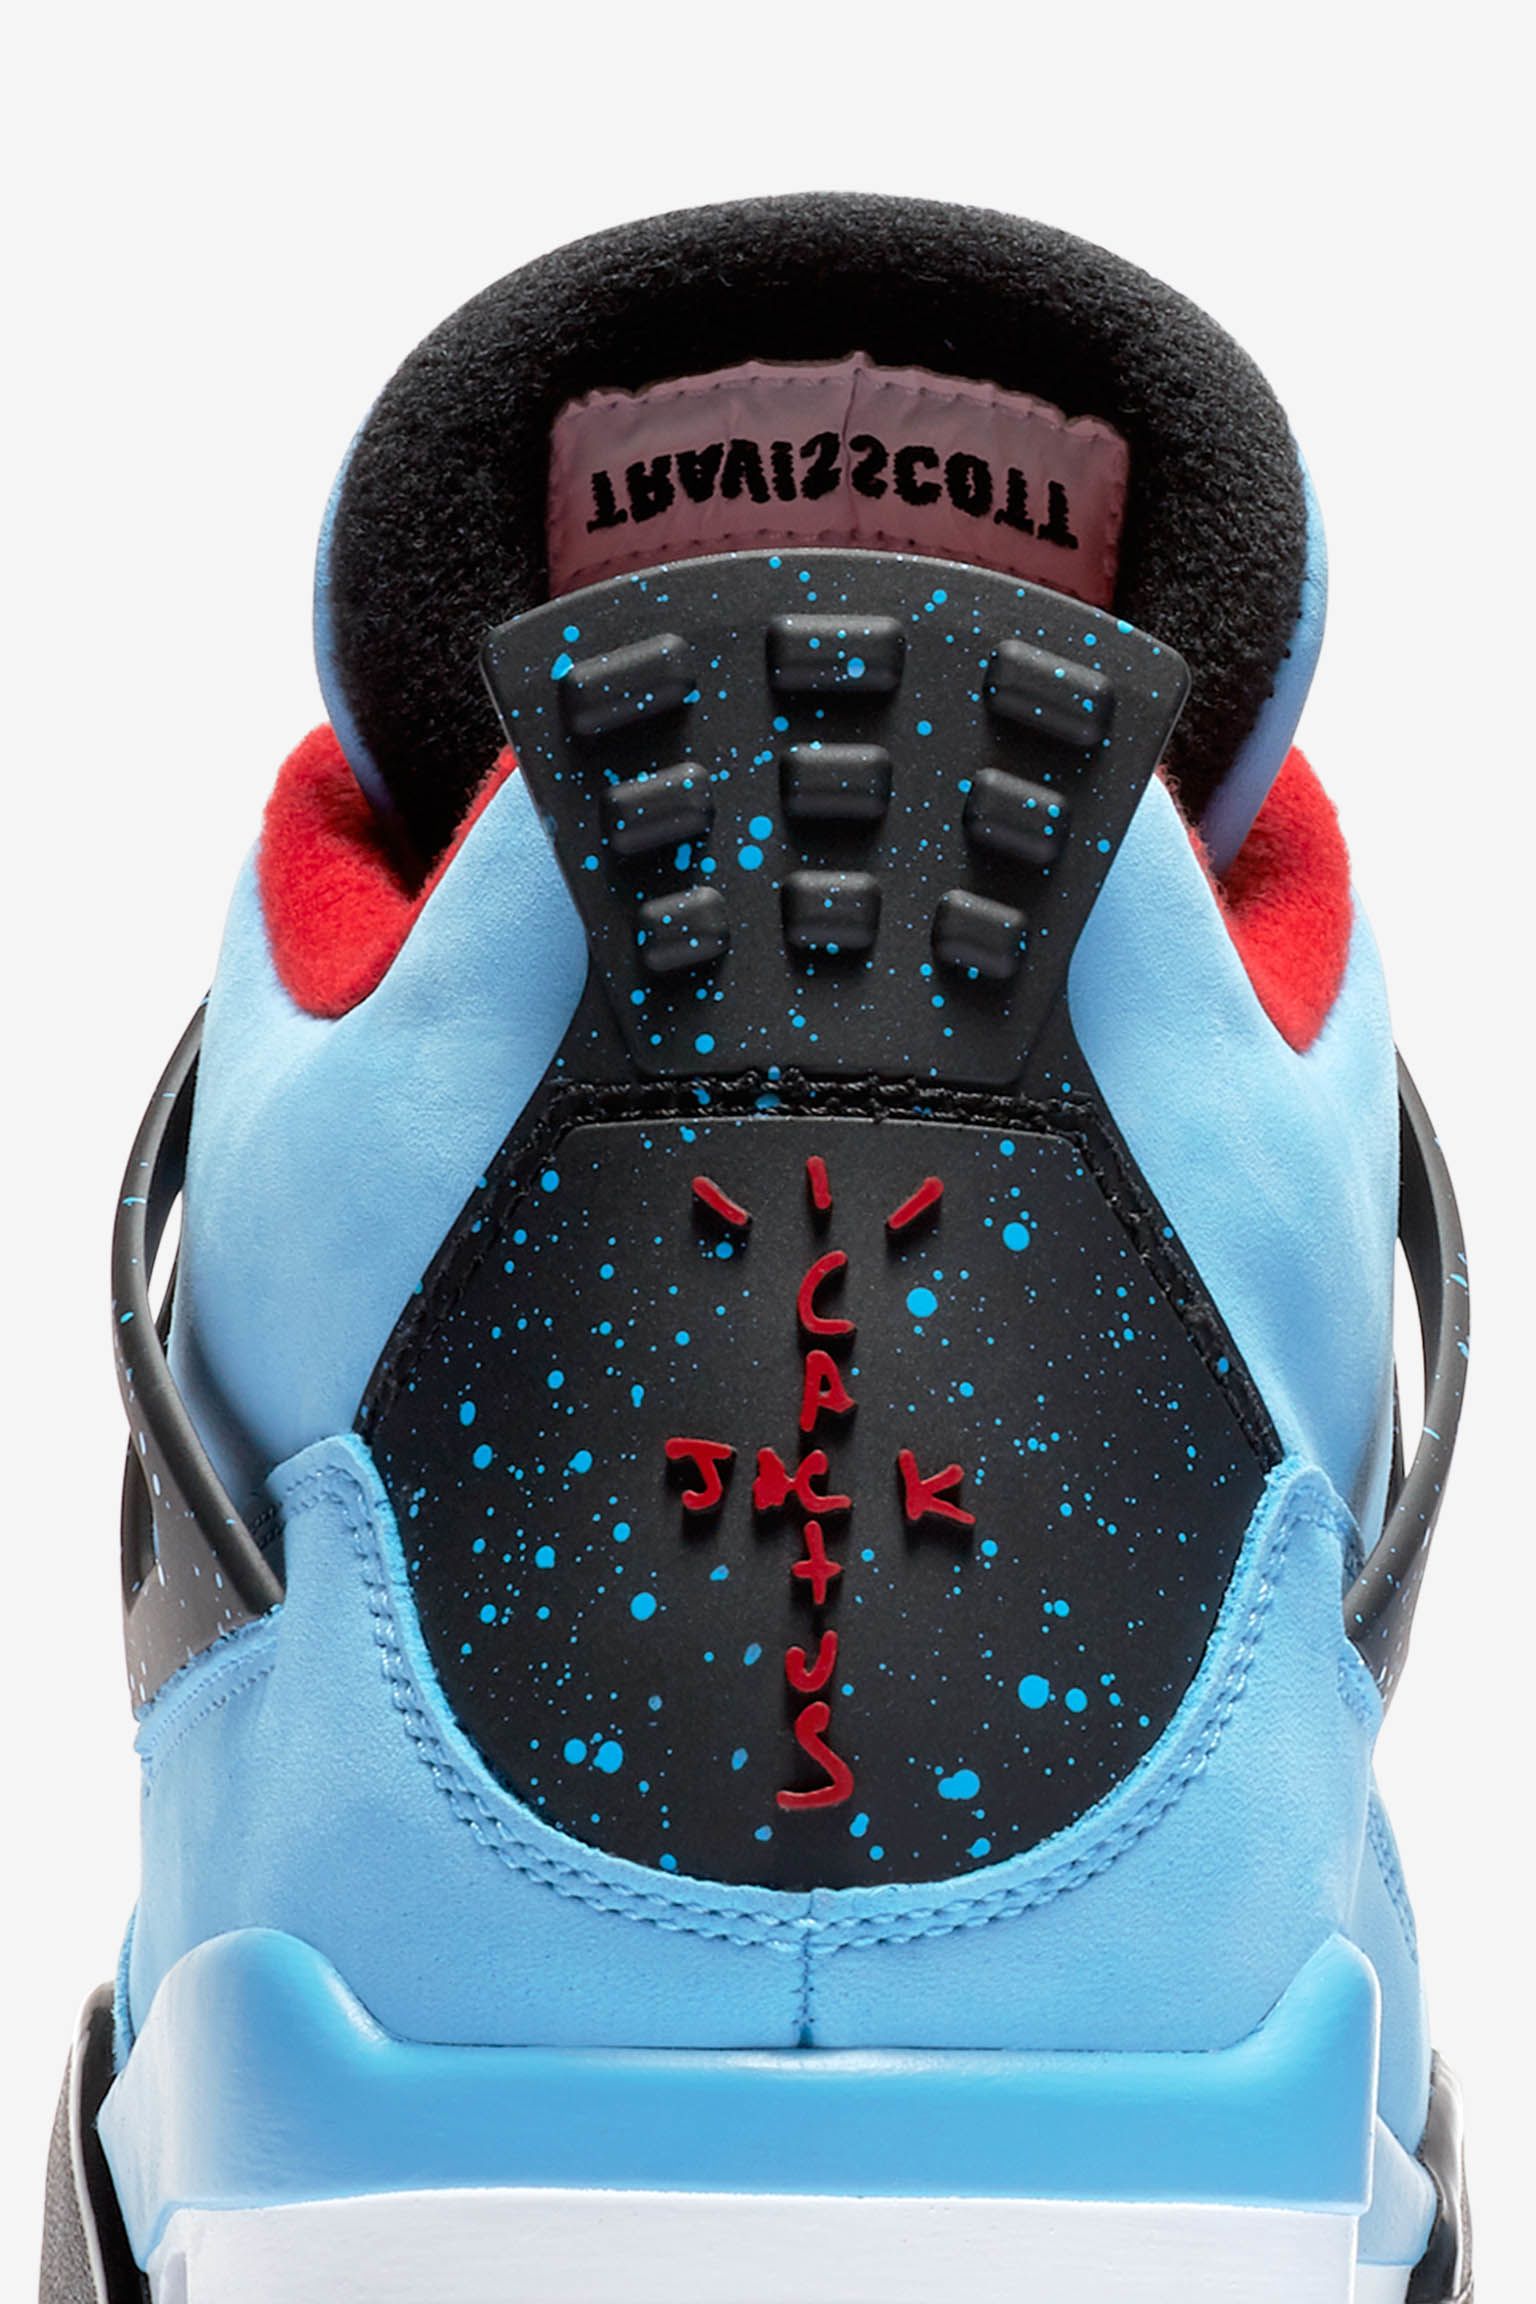 Air Jordan 4 Travis Scott 'Cactus Jack' Release Date. Nike SNKRS قط شارتروه